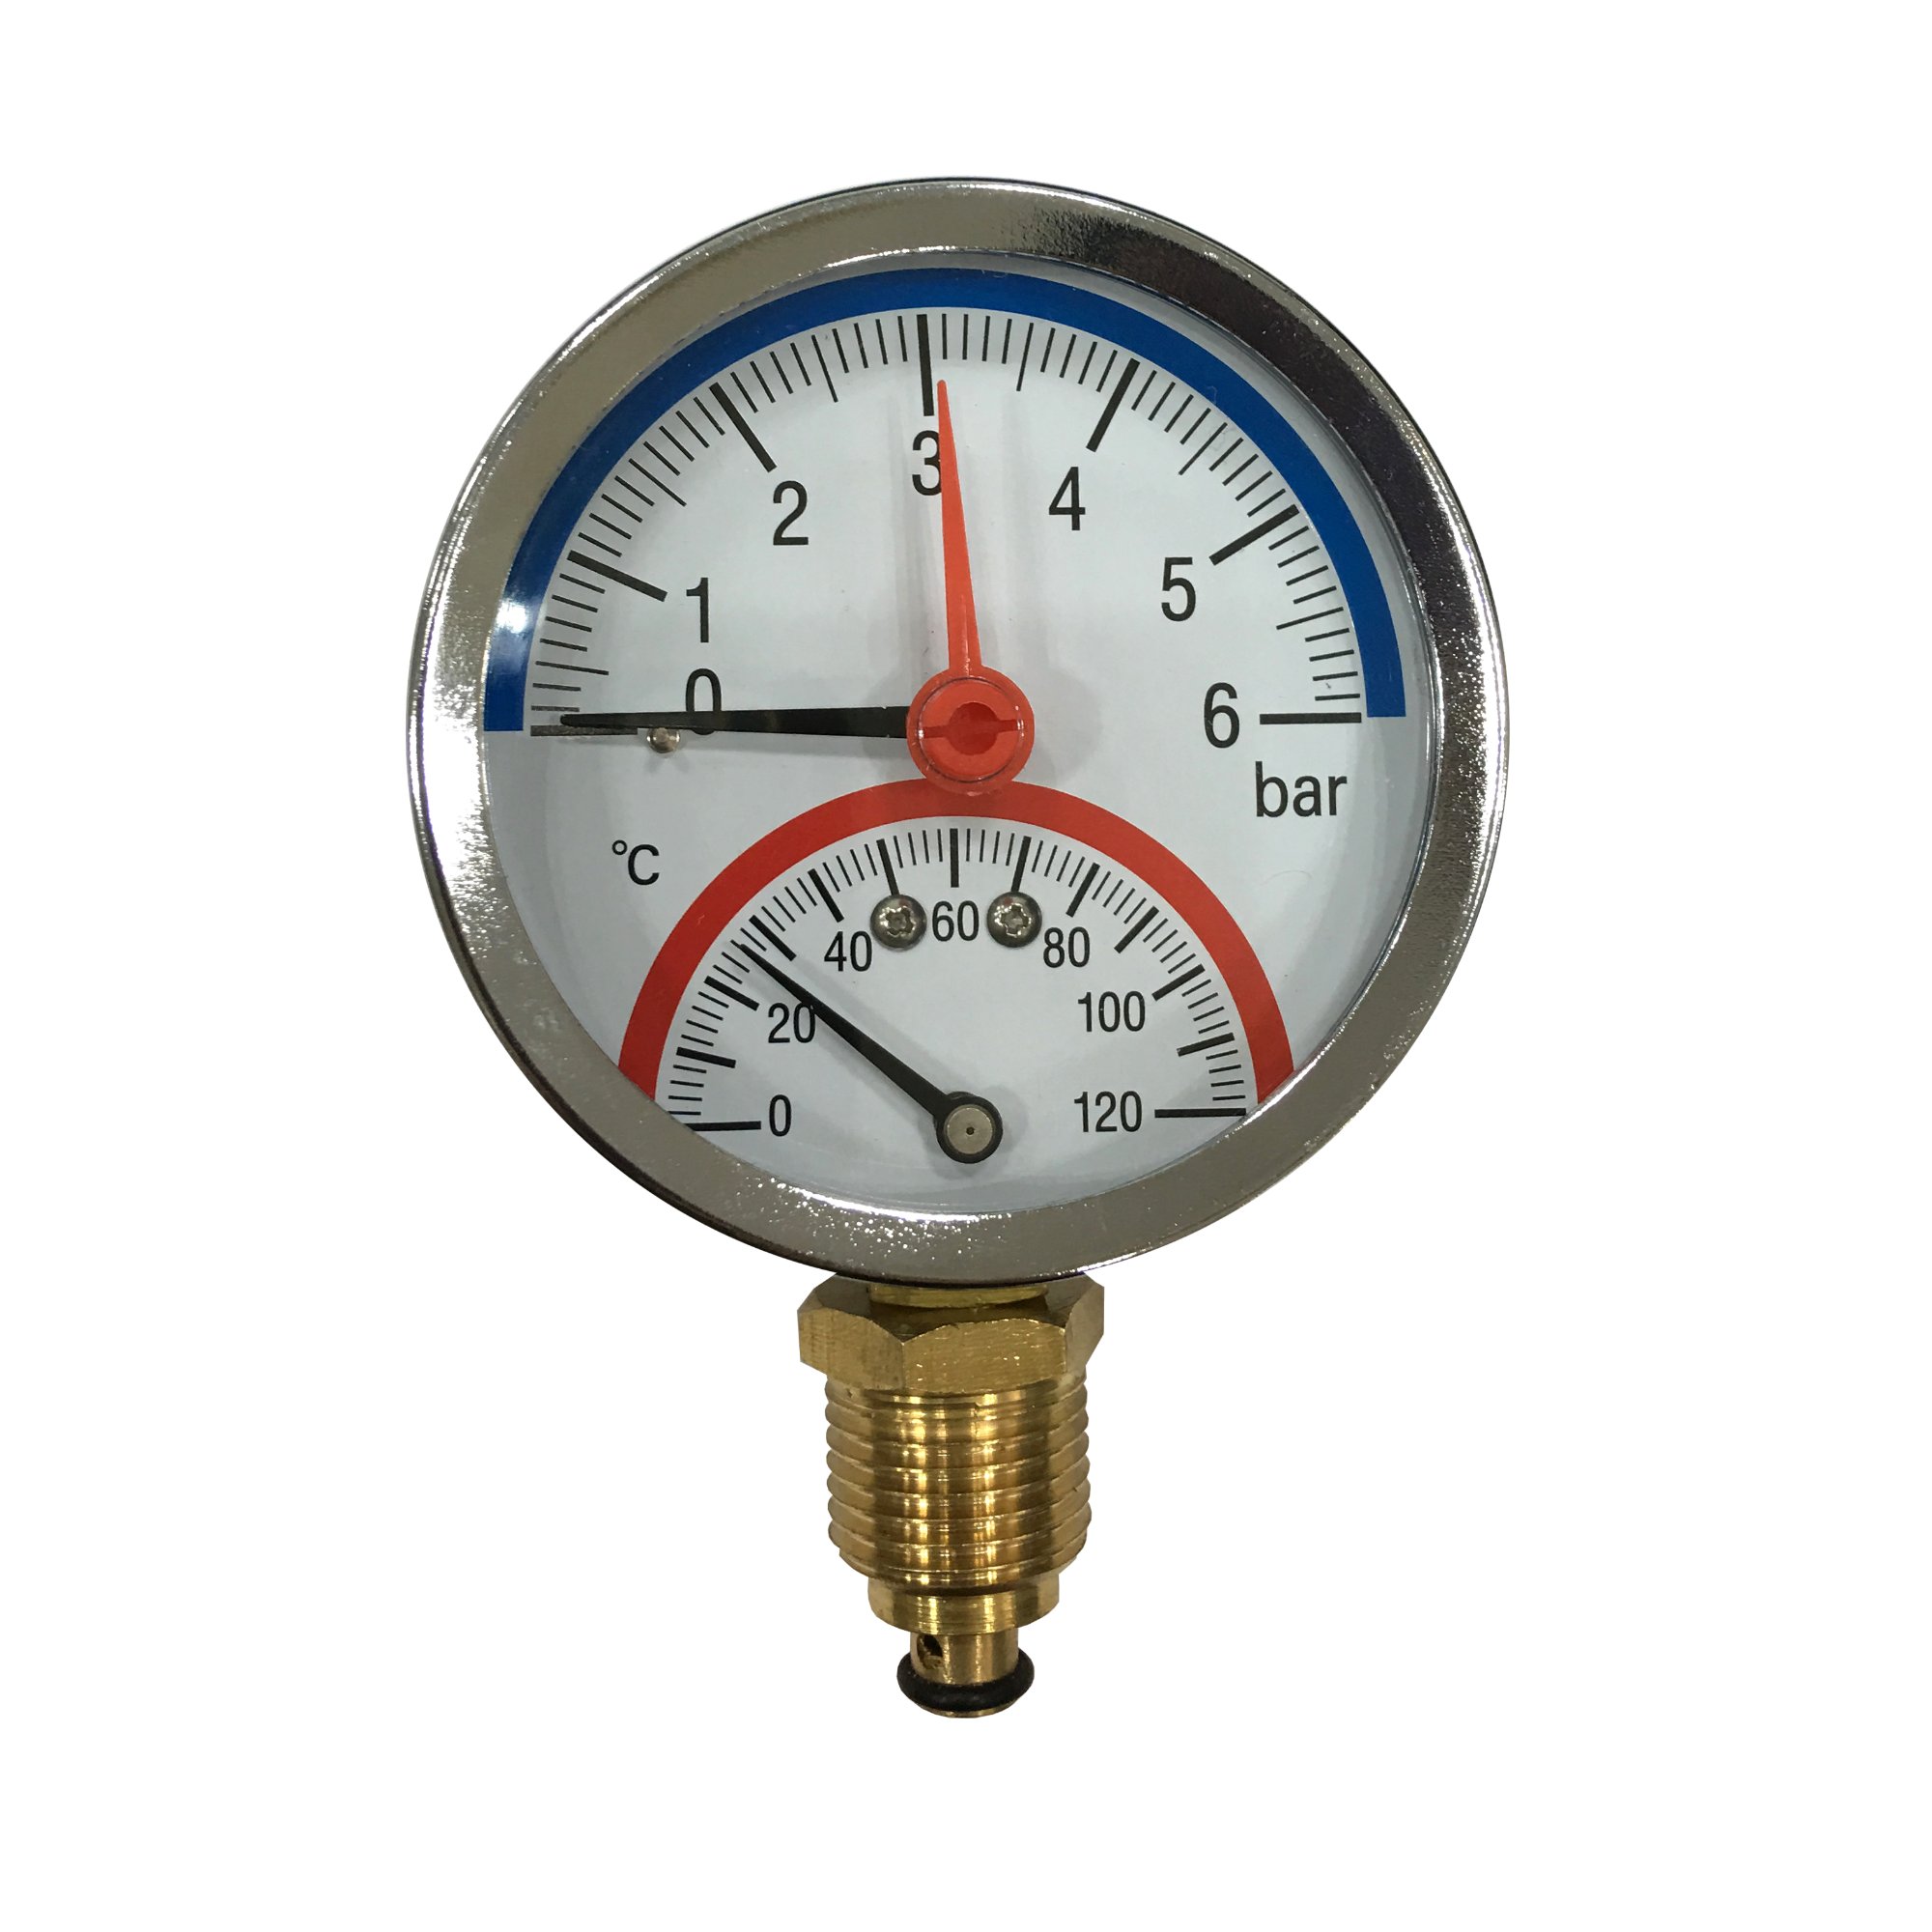 Tridicator (Pressure and temperature gauge)